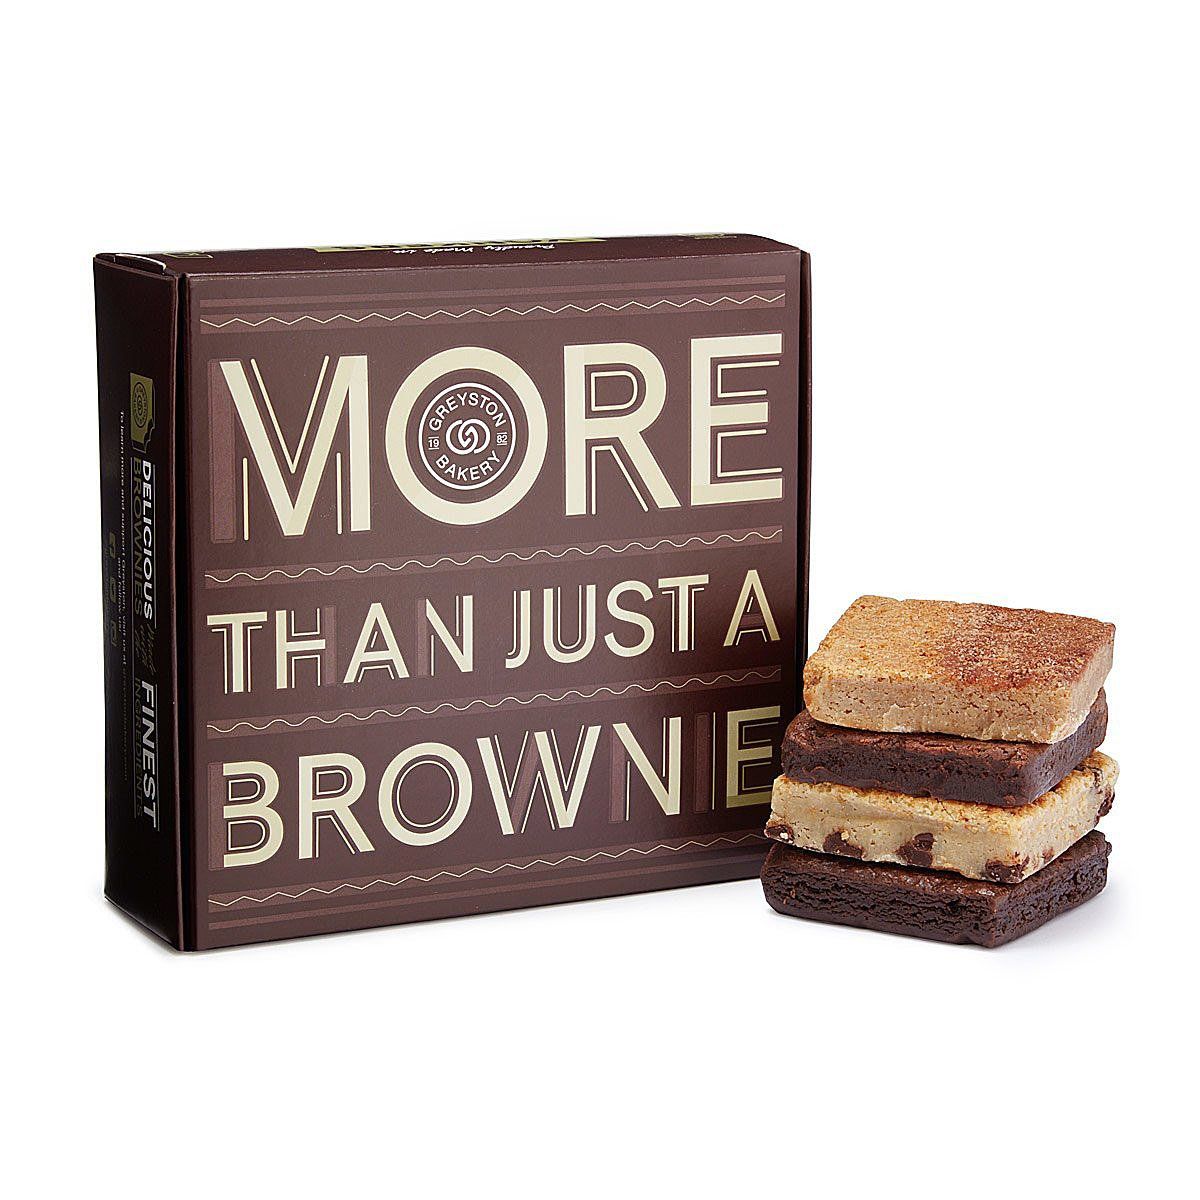 Benevolent Brownies